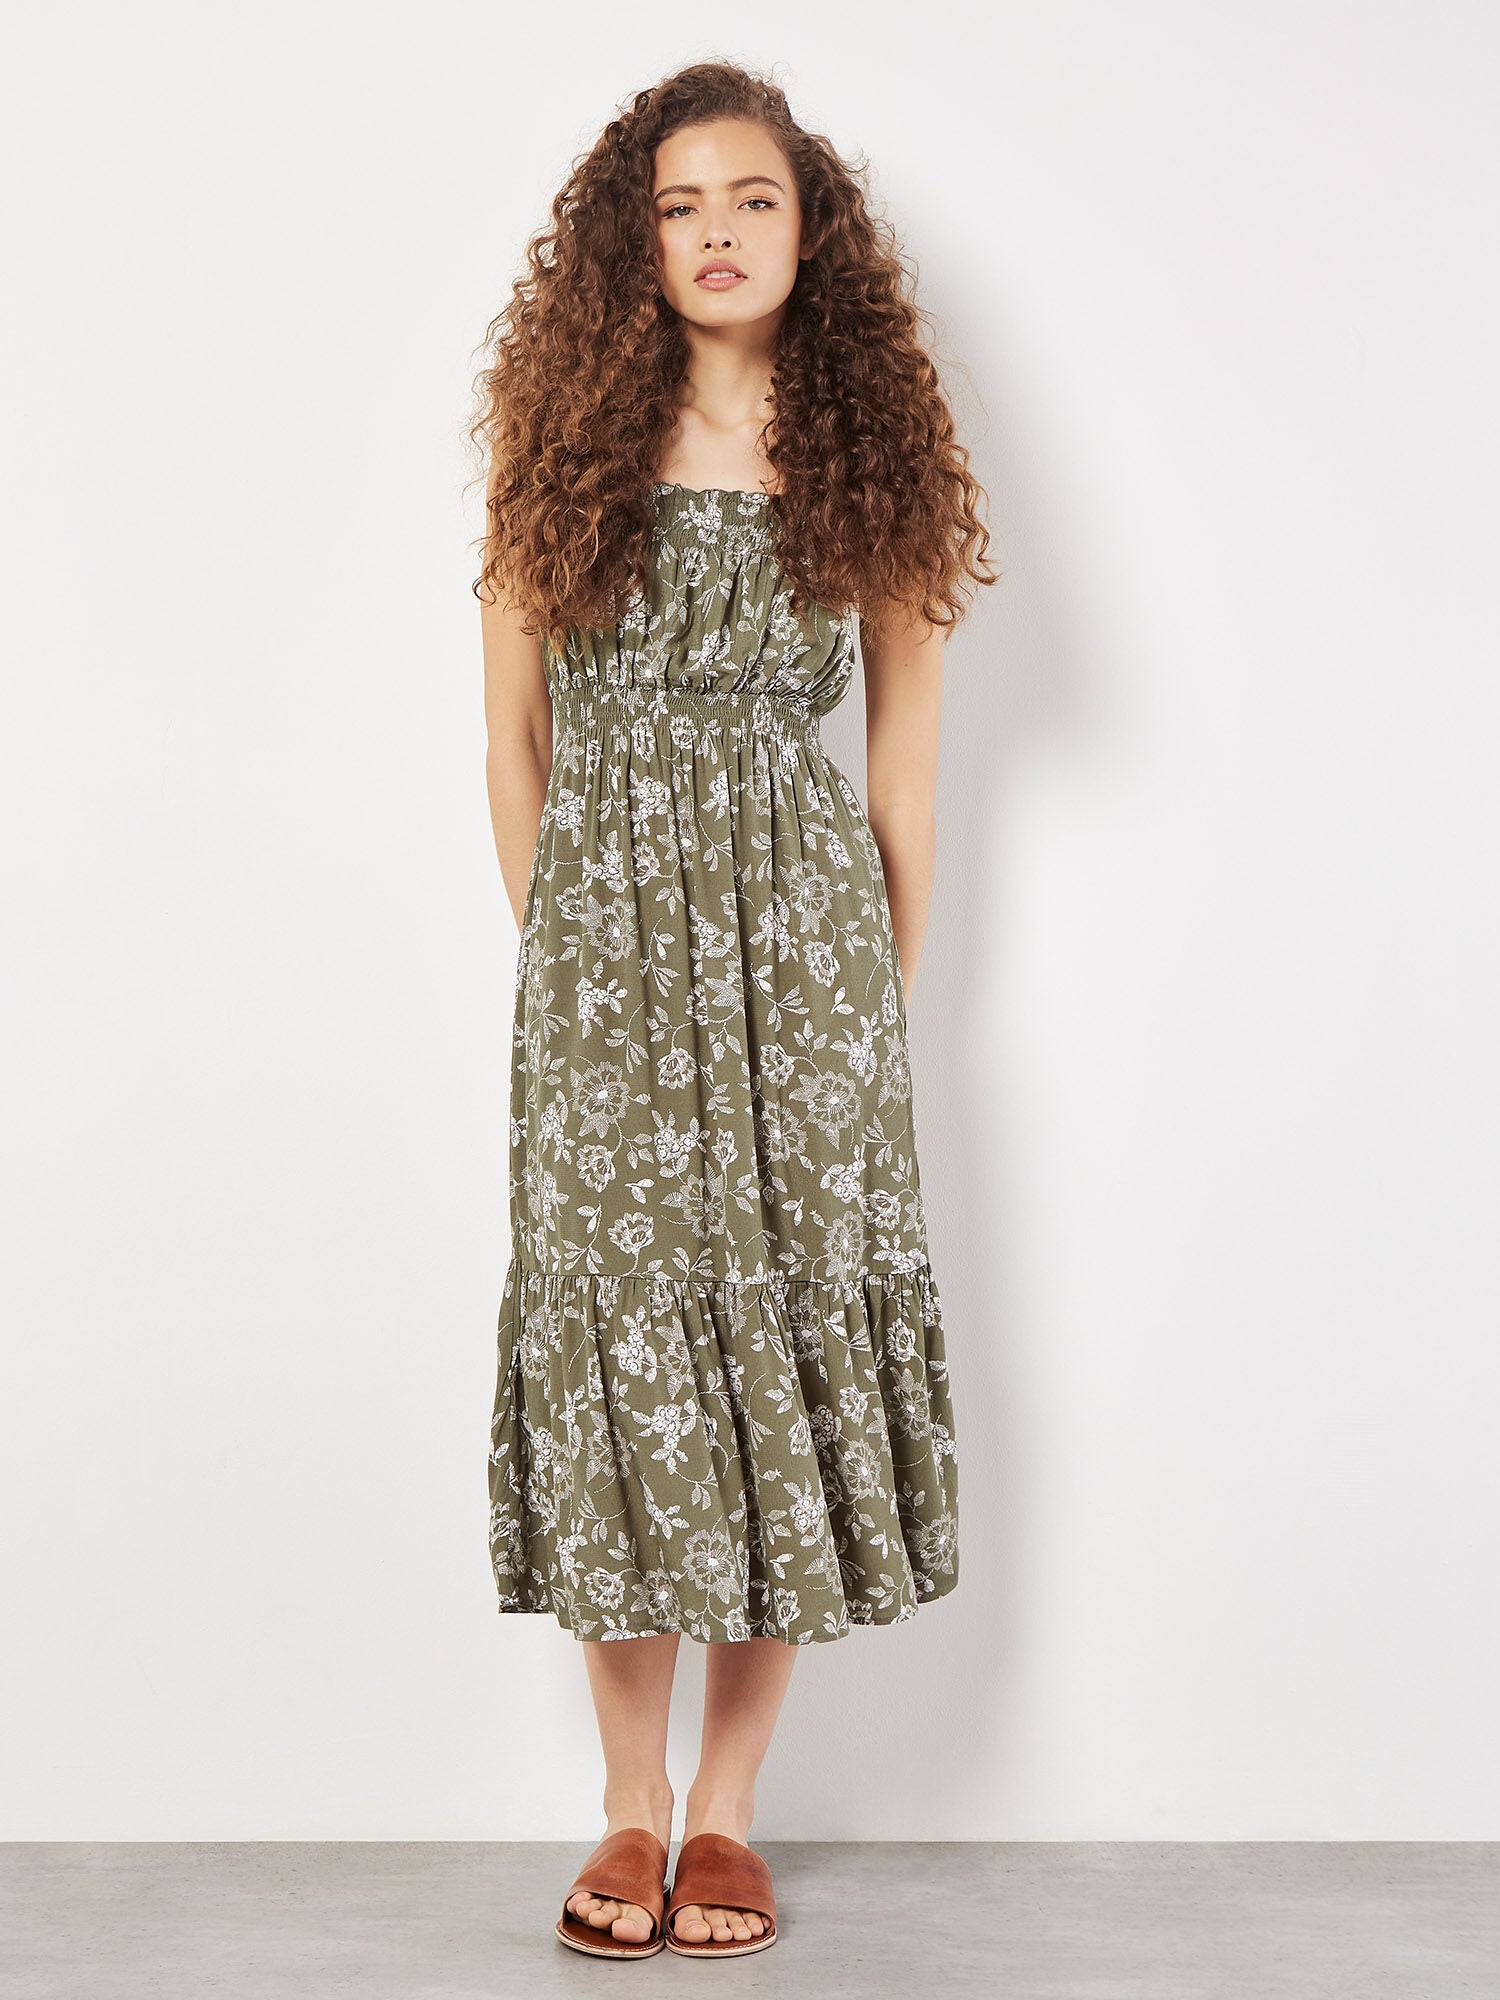 APRICOT - Smocked Nape Floral Border Dress - 824782 - Boutique Bubbles